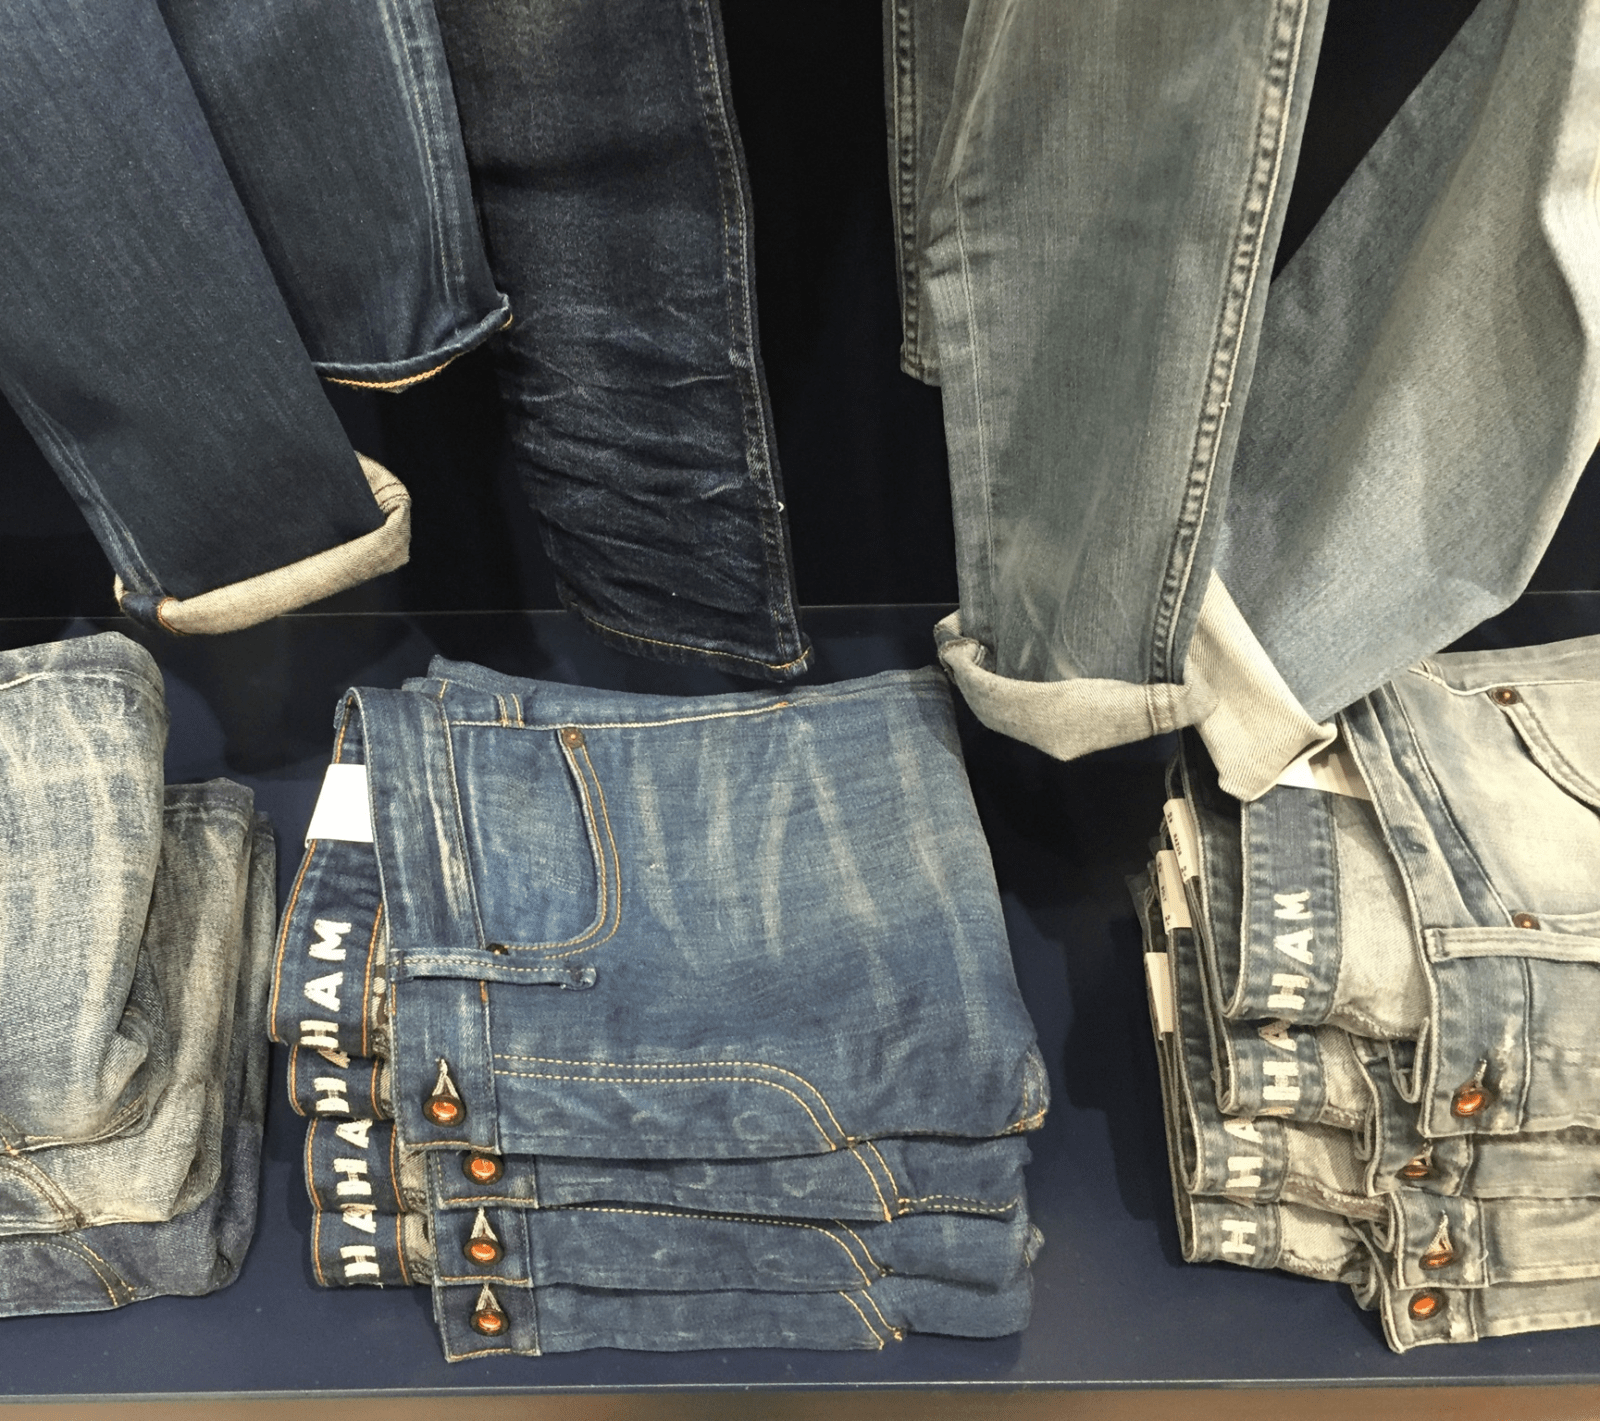 Kultobjekt-Jeans